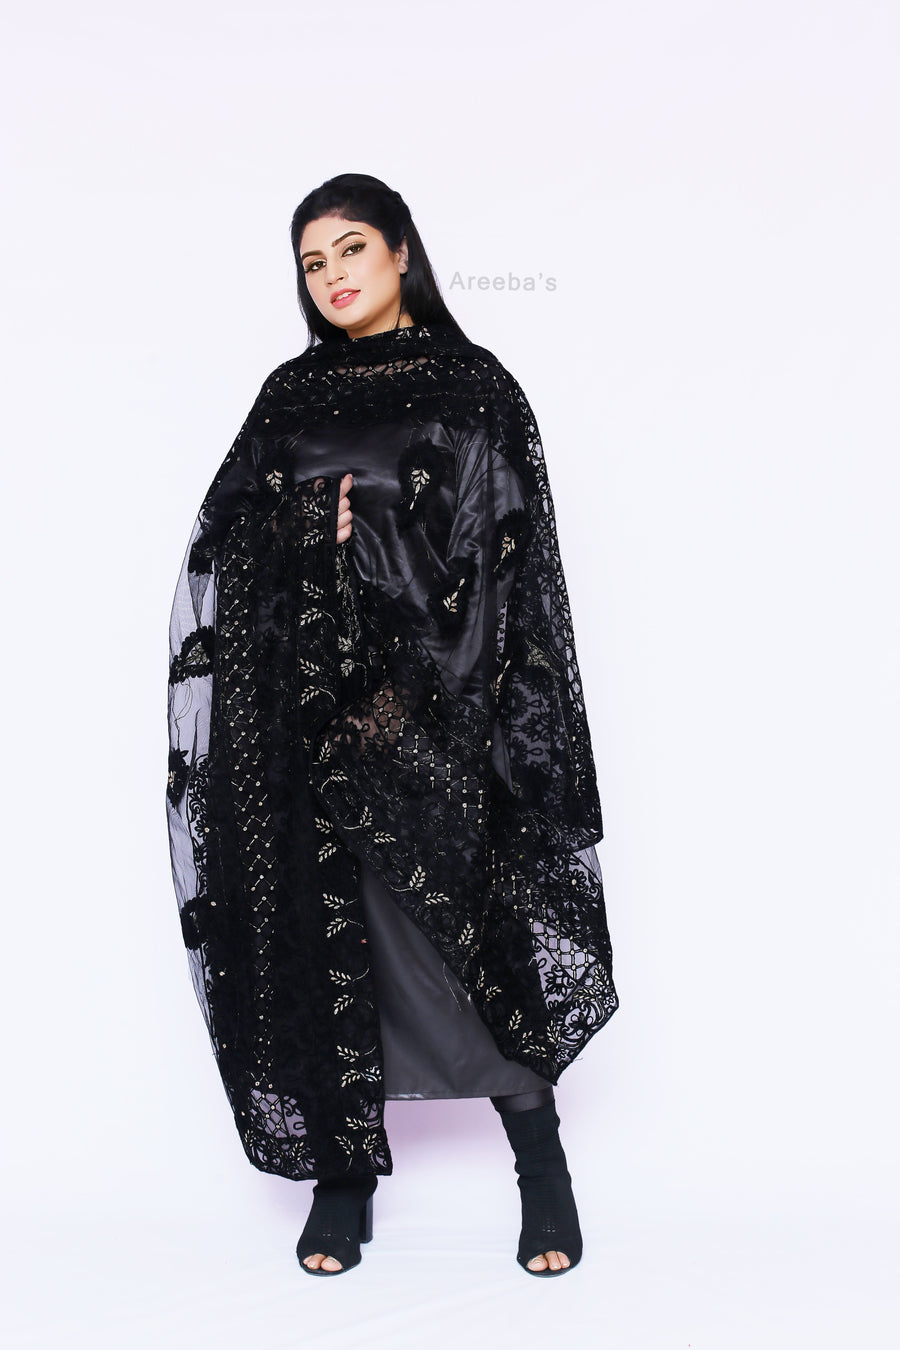 Dupatta 139- Areeba's Couture